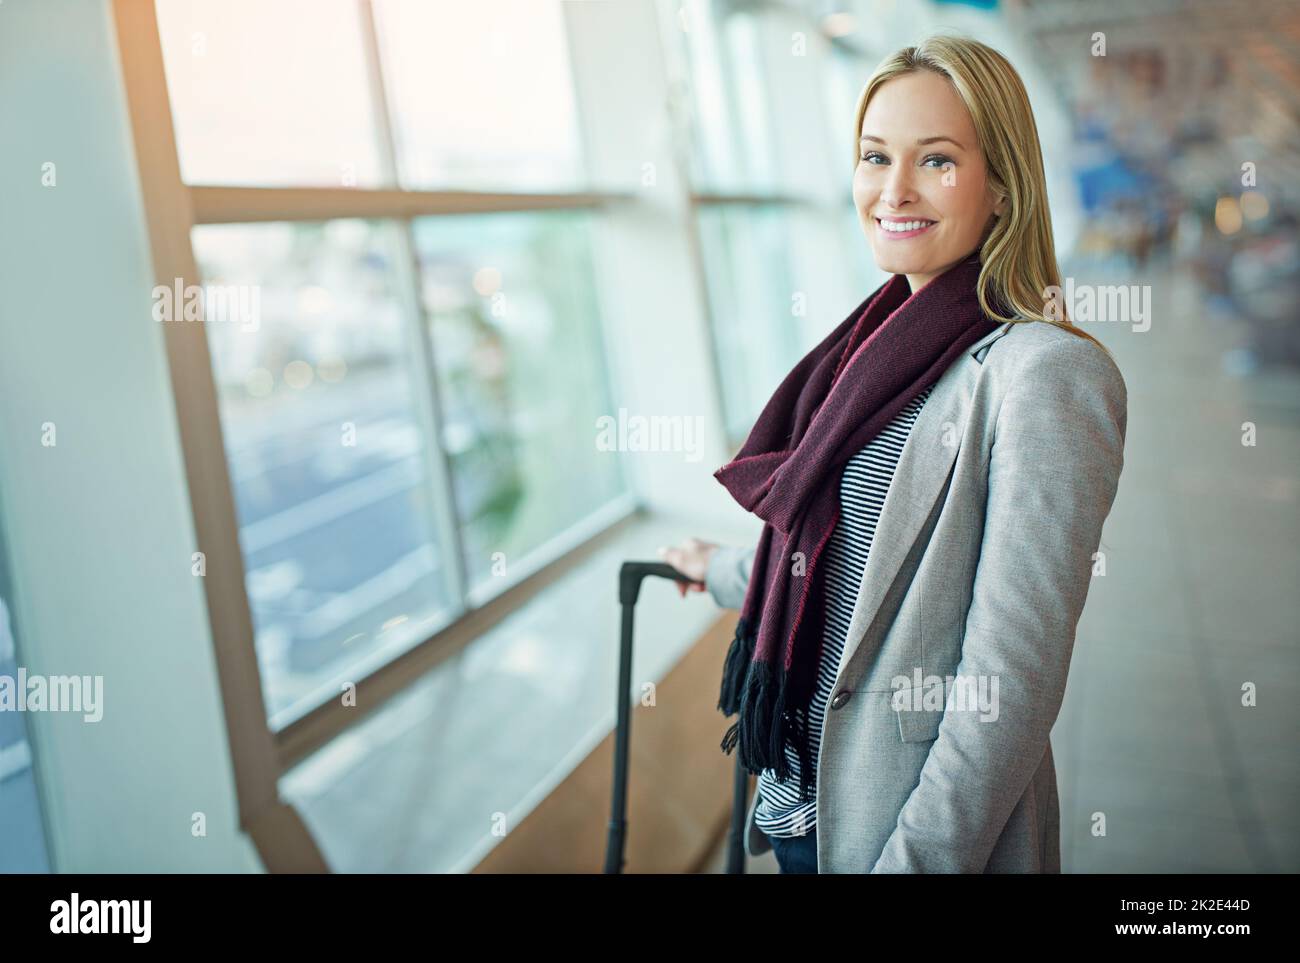 Lasst die Reise beginnen. Porträt einer jungen Frau, die mit ihrem Gepäck auf einem Flughafen steht. Stockfoto